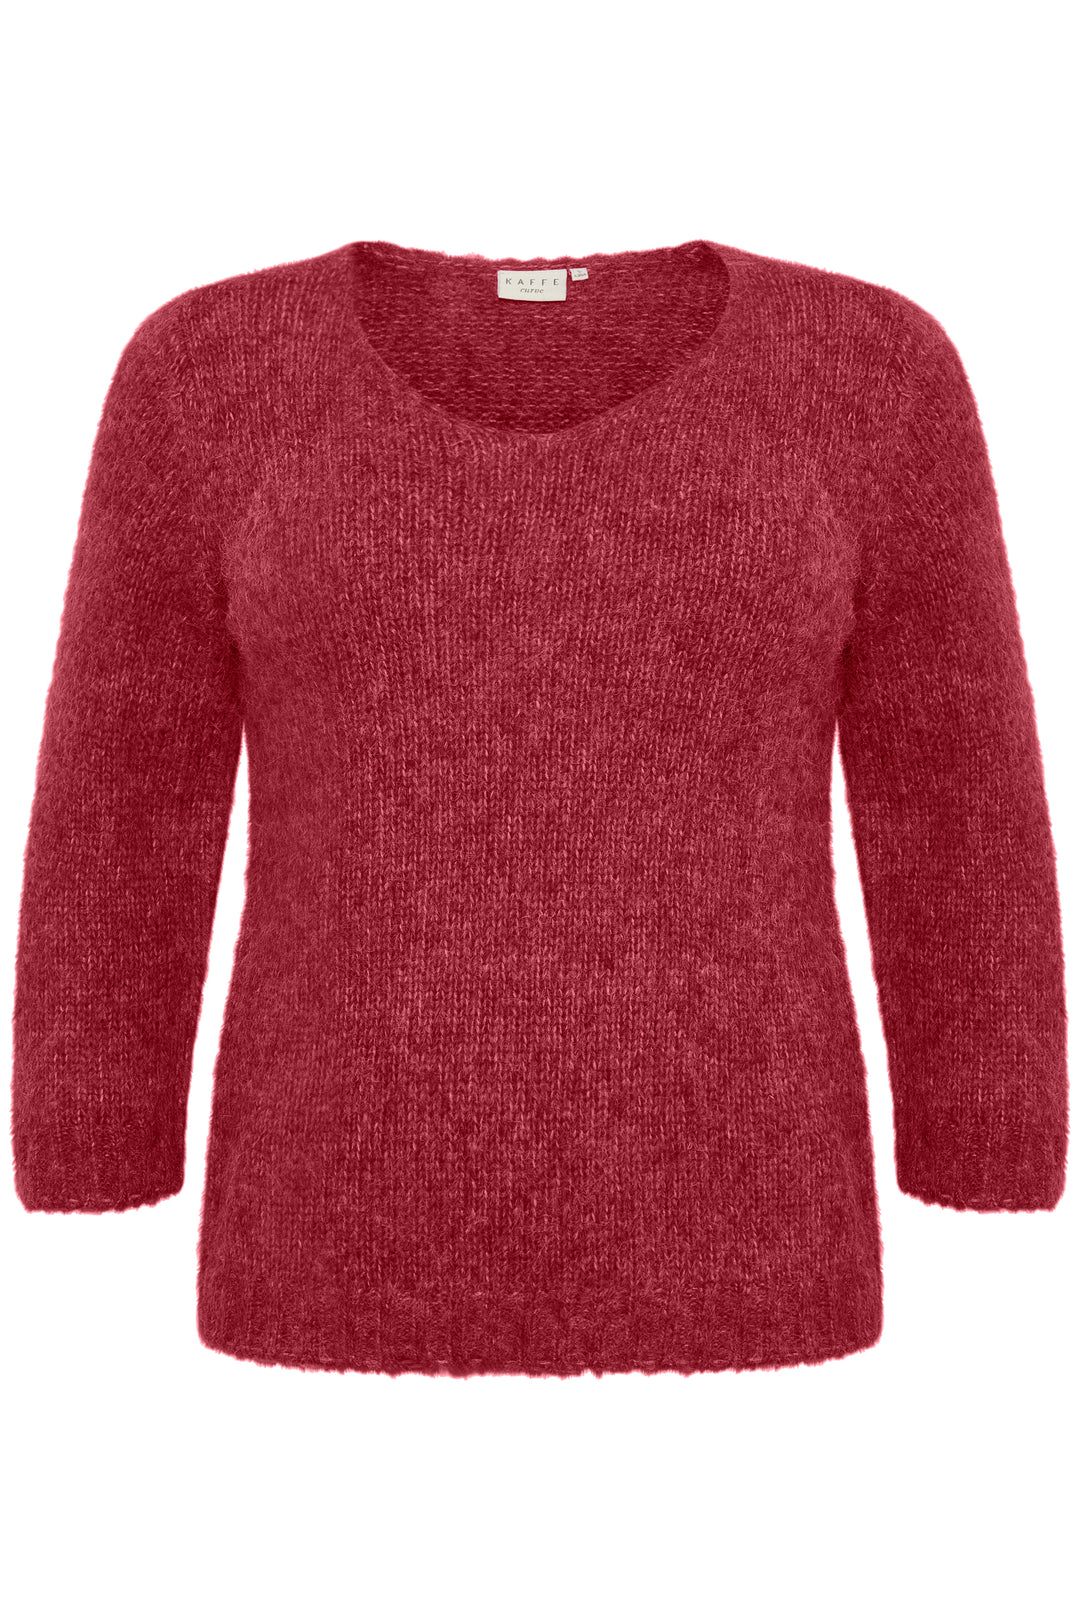 rood roze trui - kaffe curve - - grote maten - dameskleding - kledingwinkel - herent - leuven